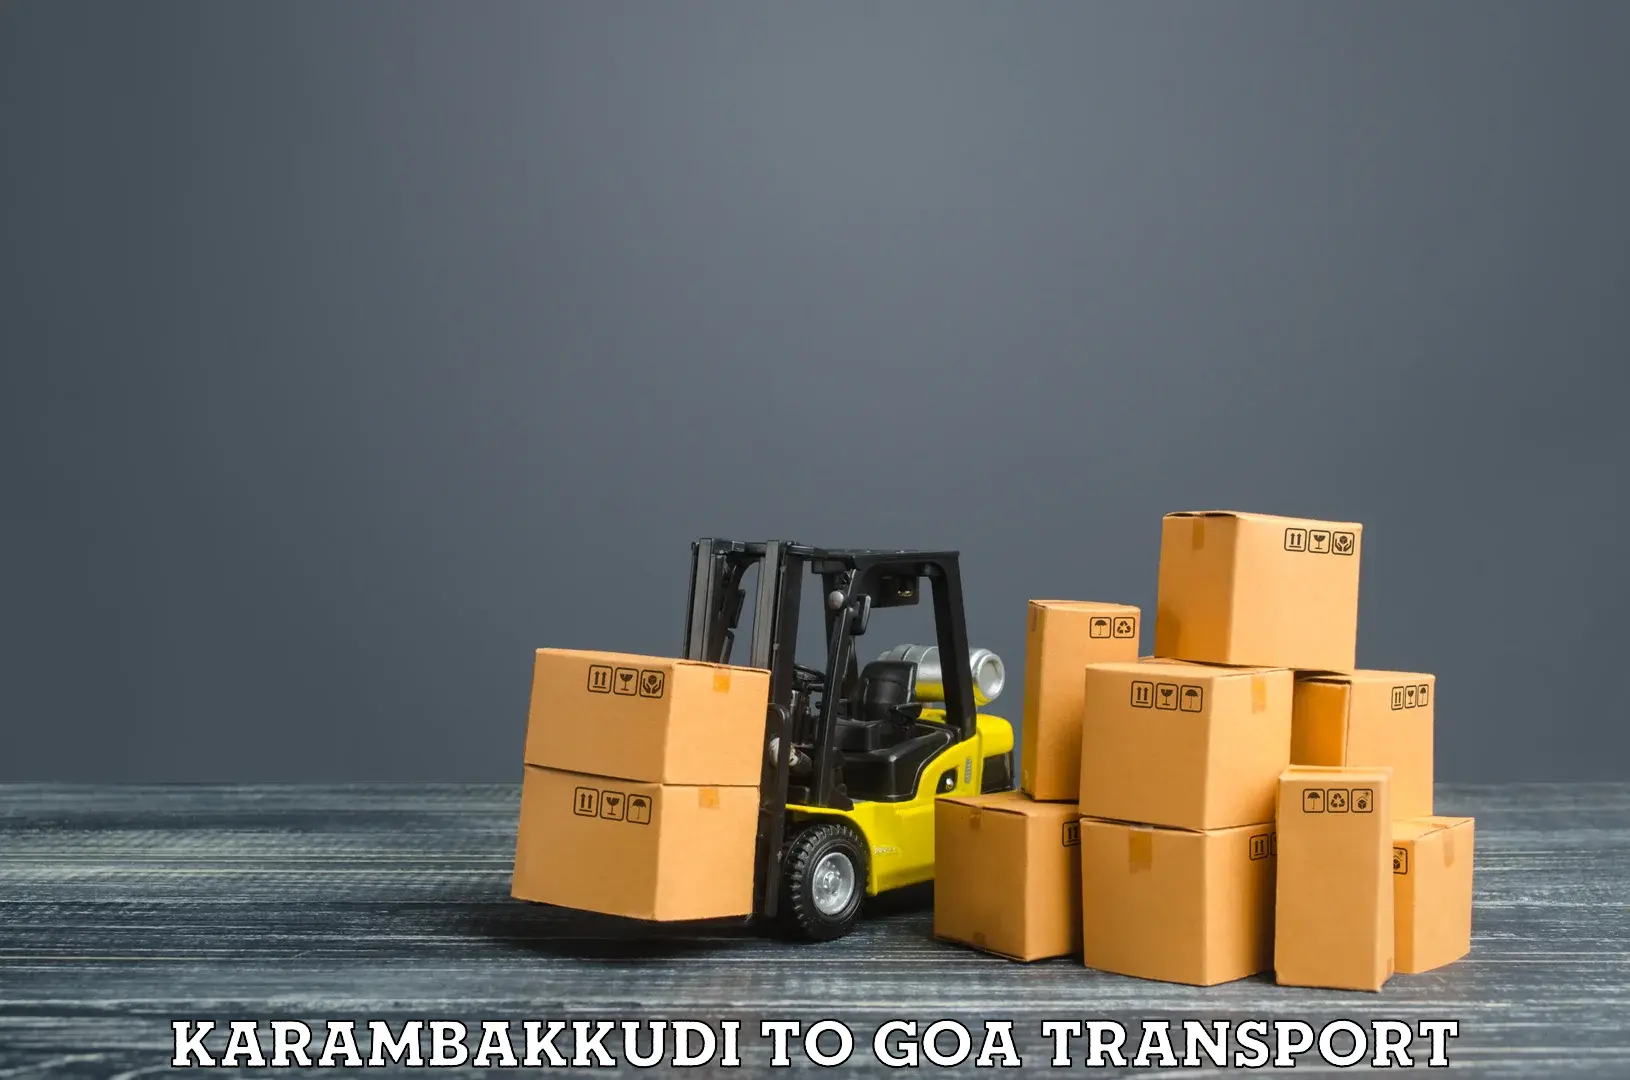 Land transport services Karambakkudi to Panjim